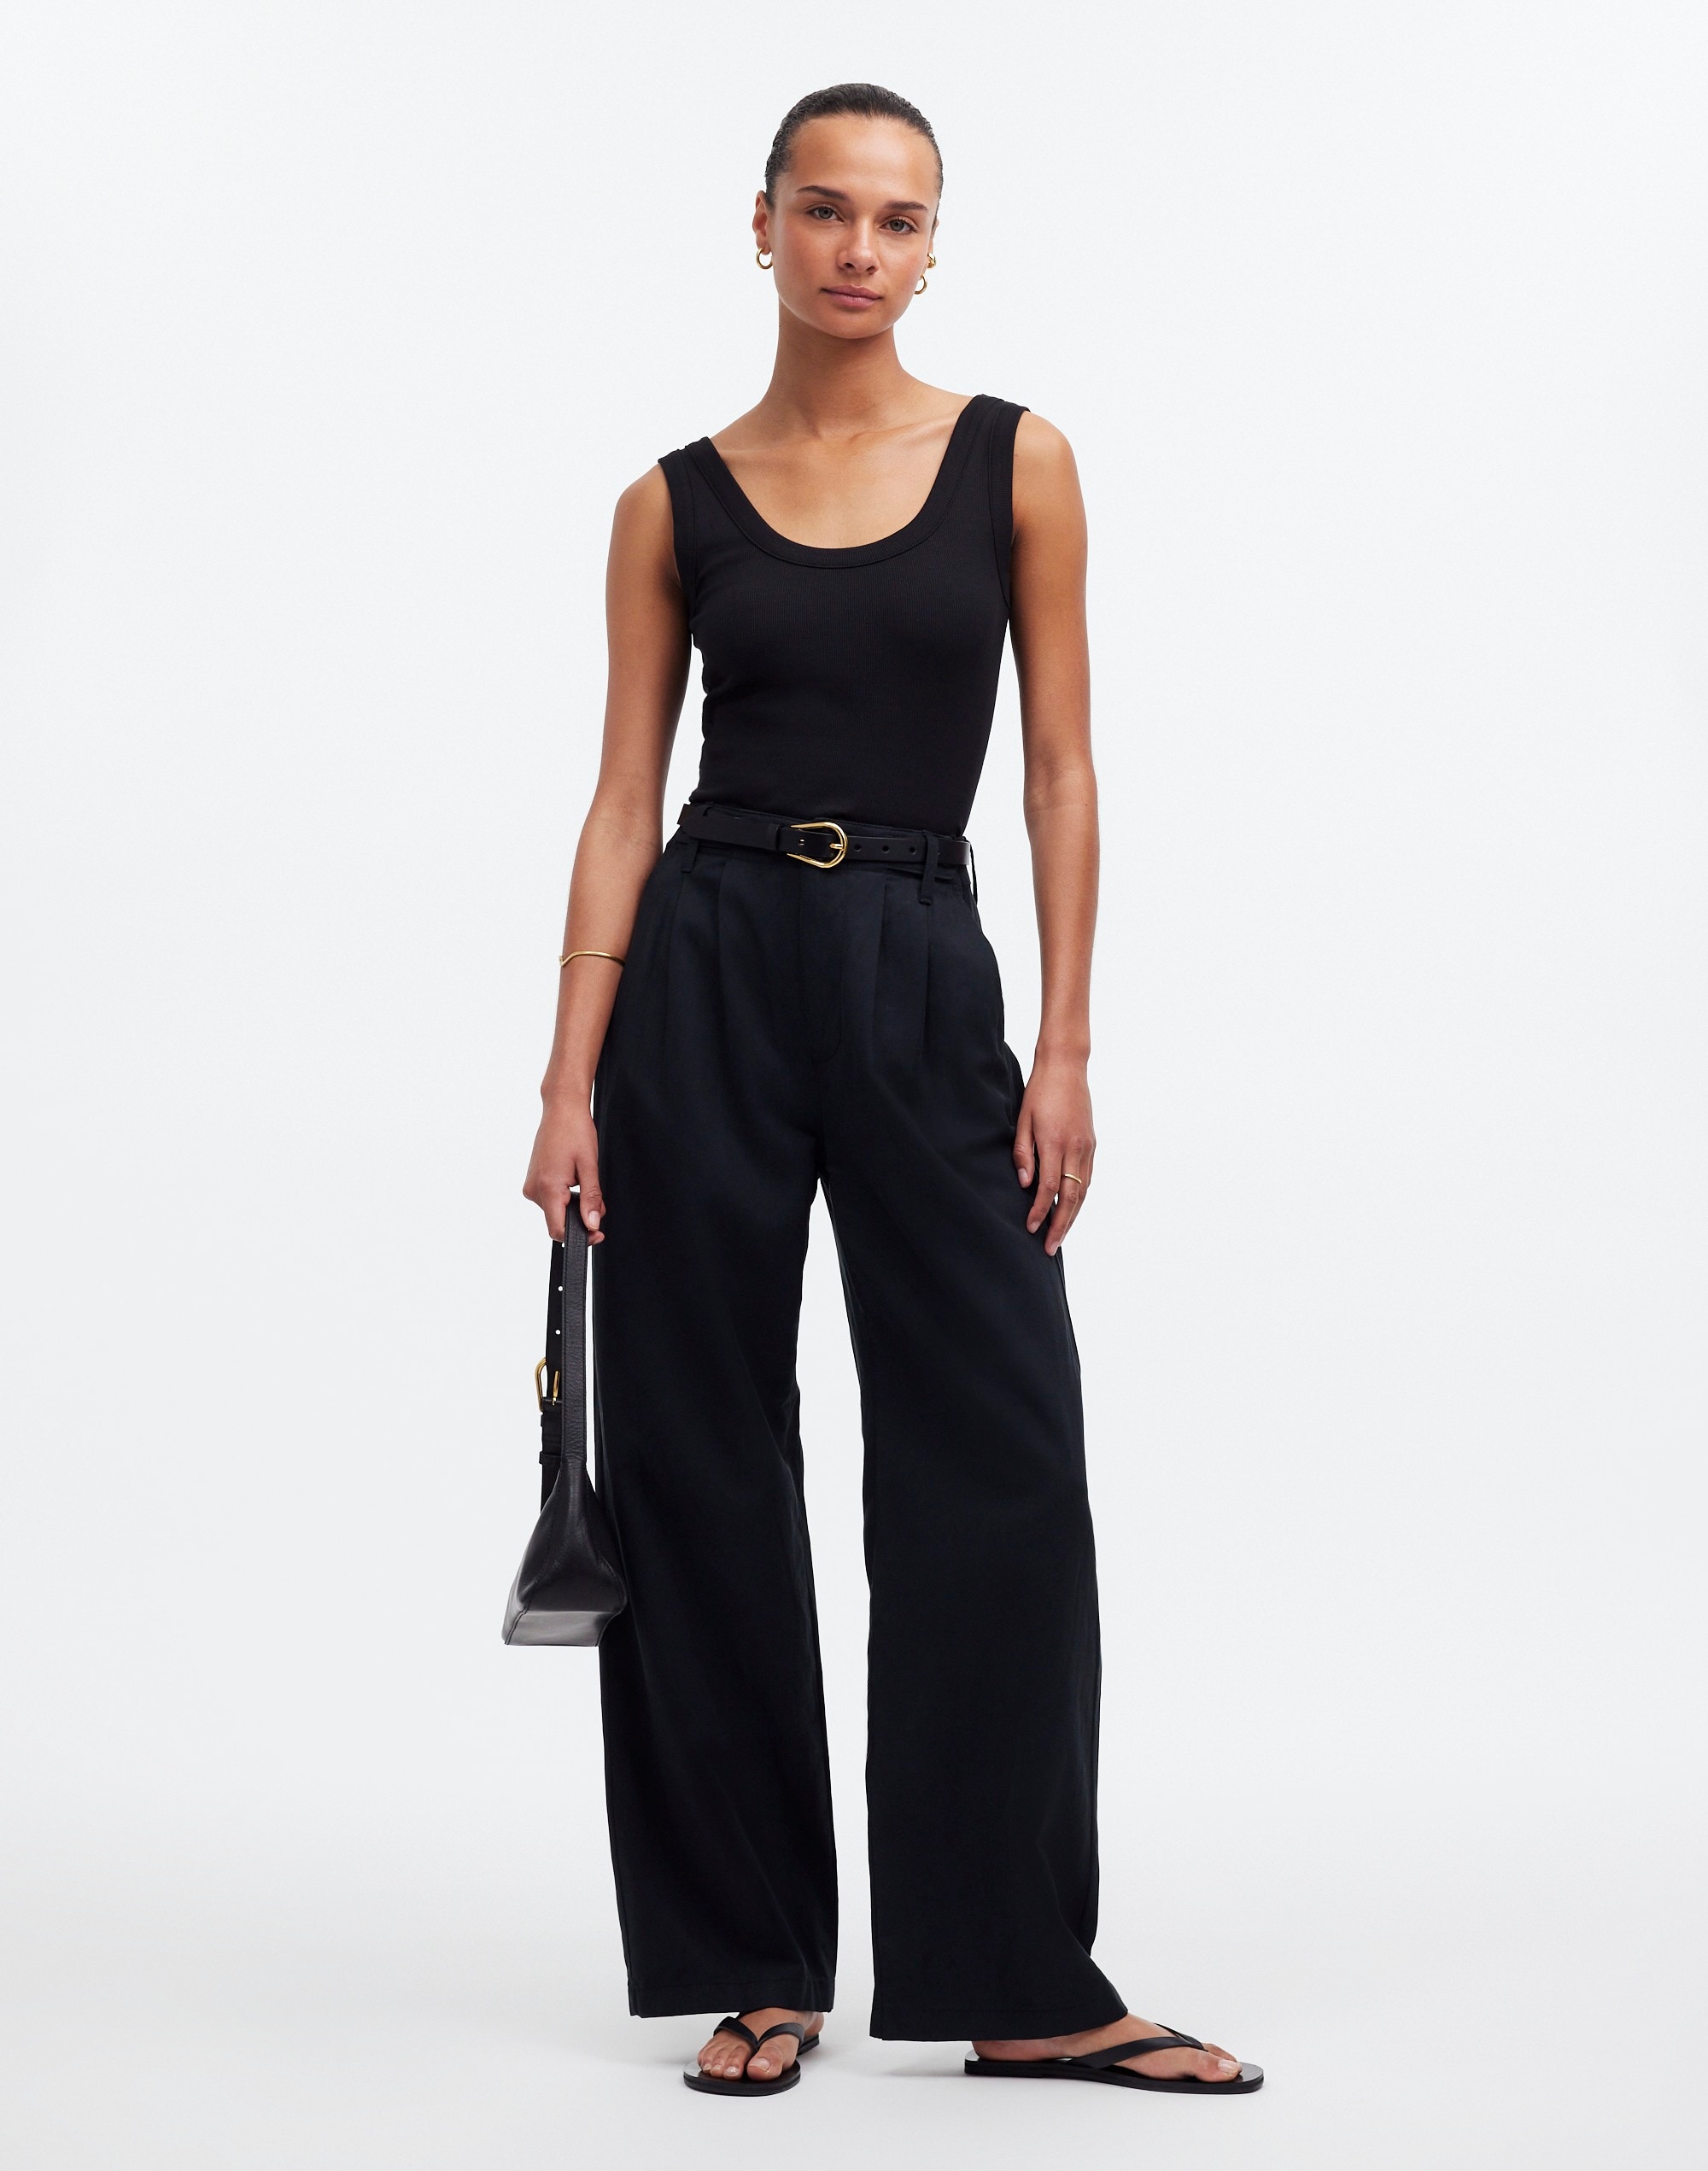 Image 1 of PRINTED PALAZZO TROUSERS from Zara  Black pallazo pants,  Pallazo pants, Fashion pants